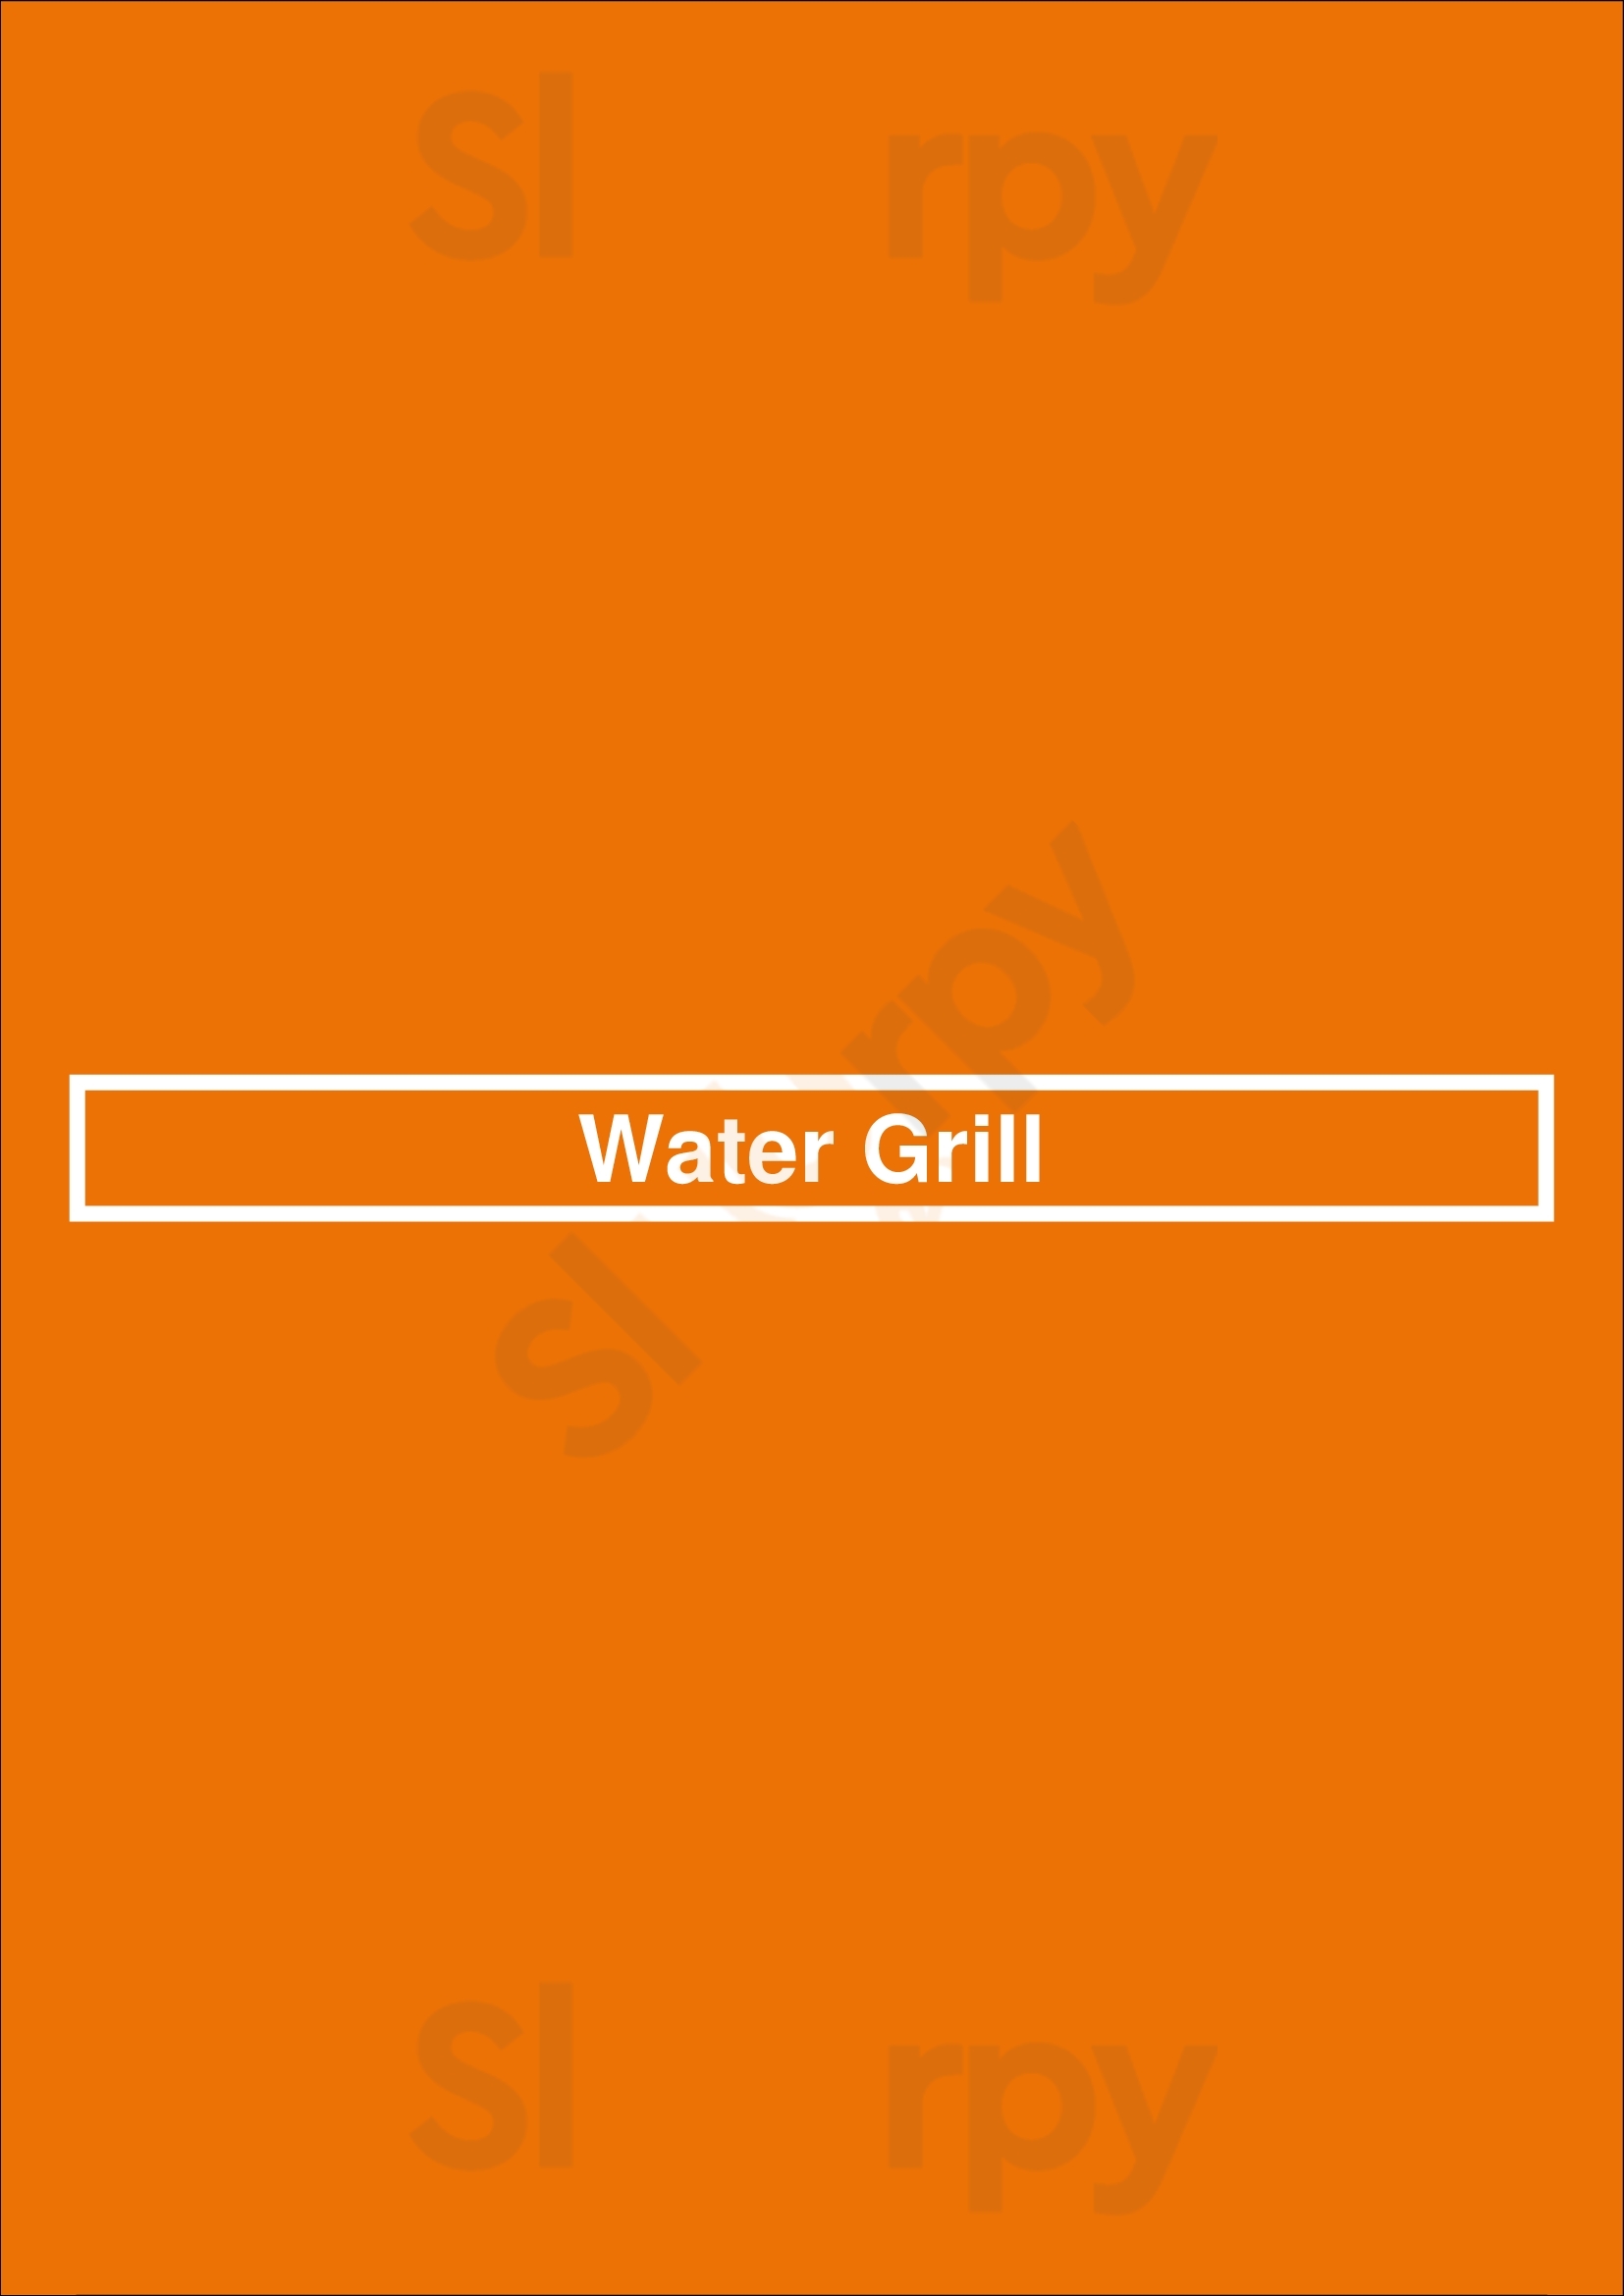 Water Grill Los Angeles Menu - 1